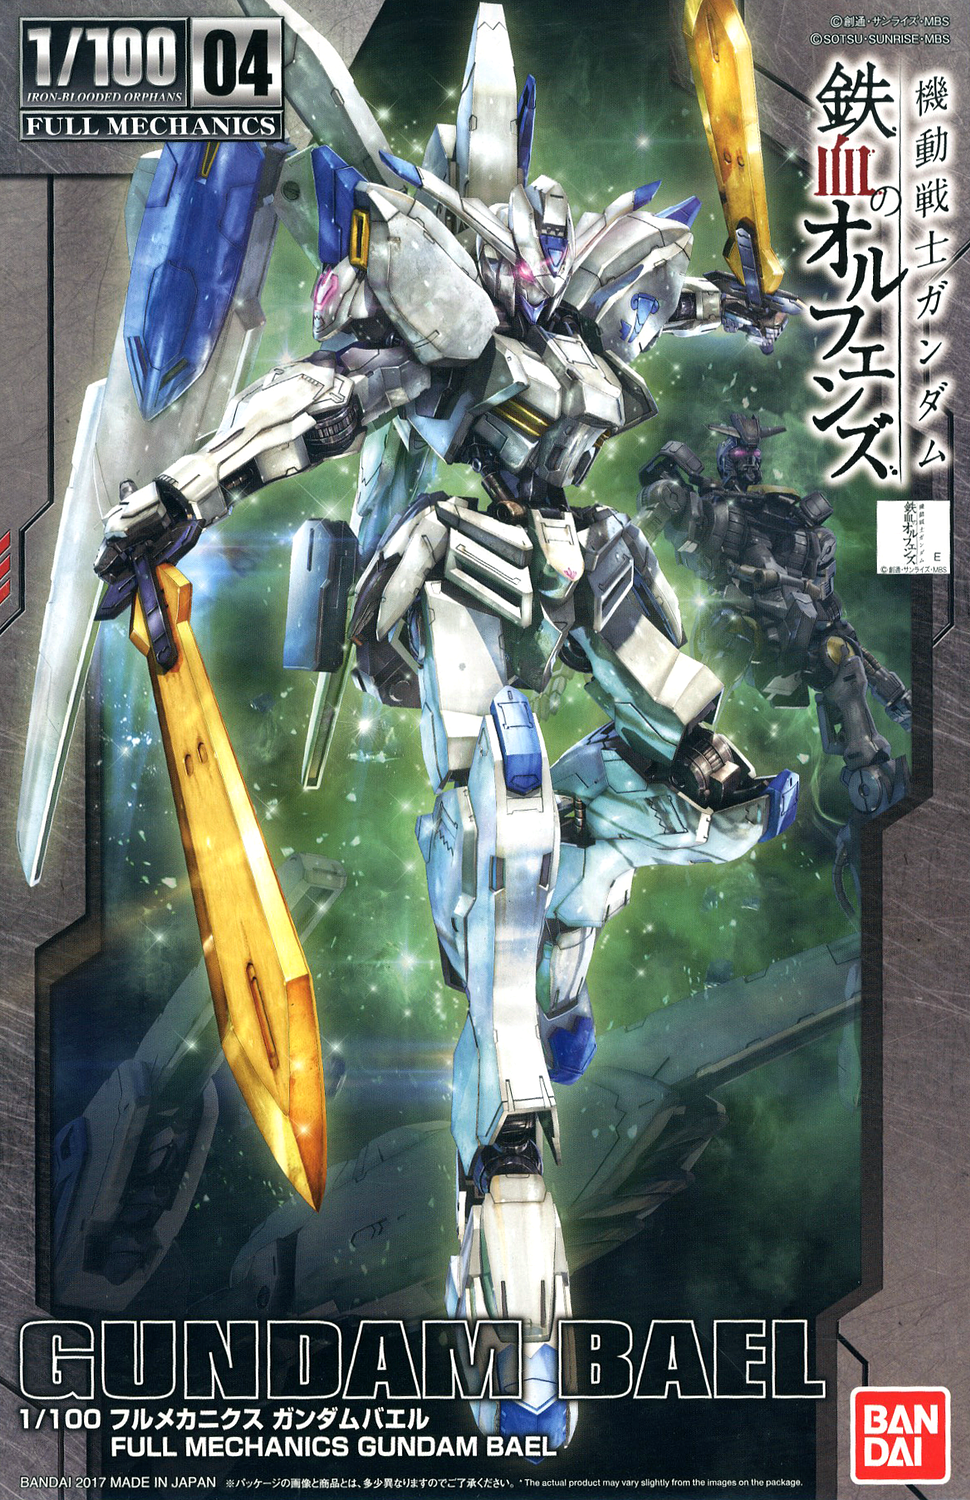 Full Mechanics Gundam Bael